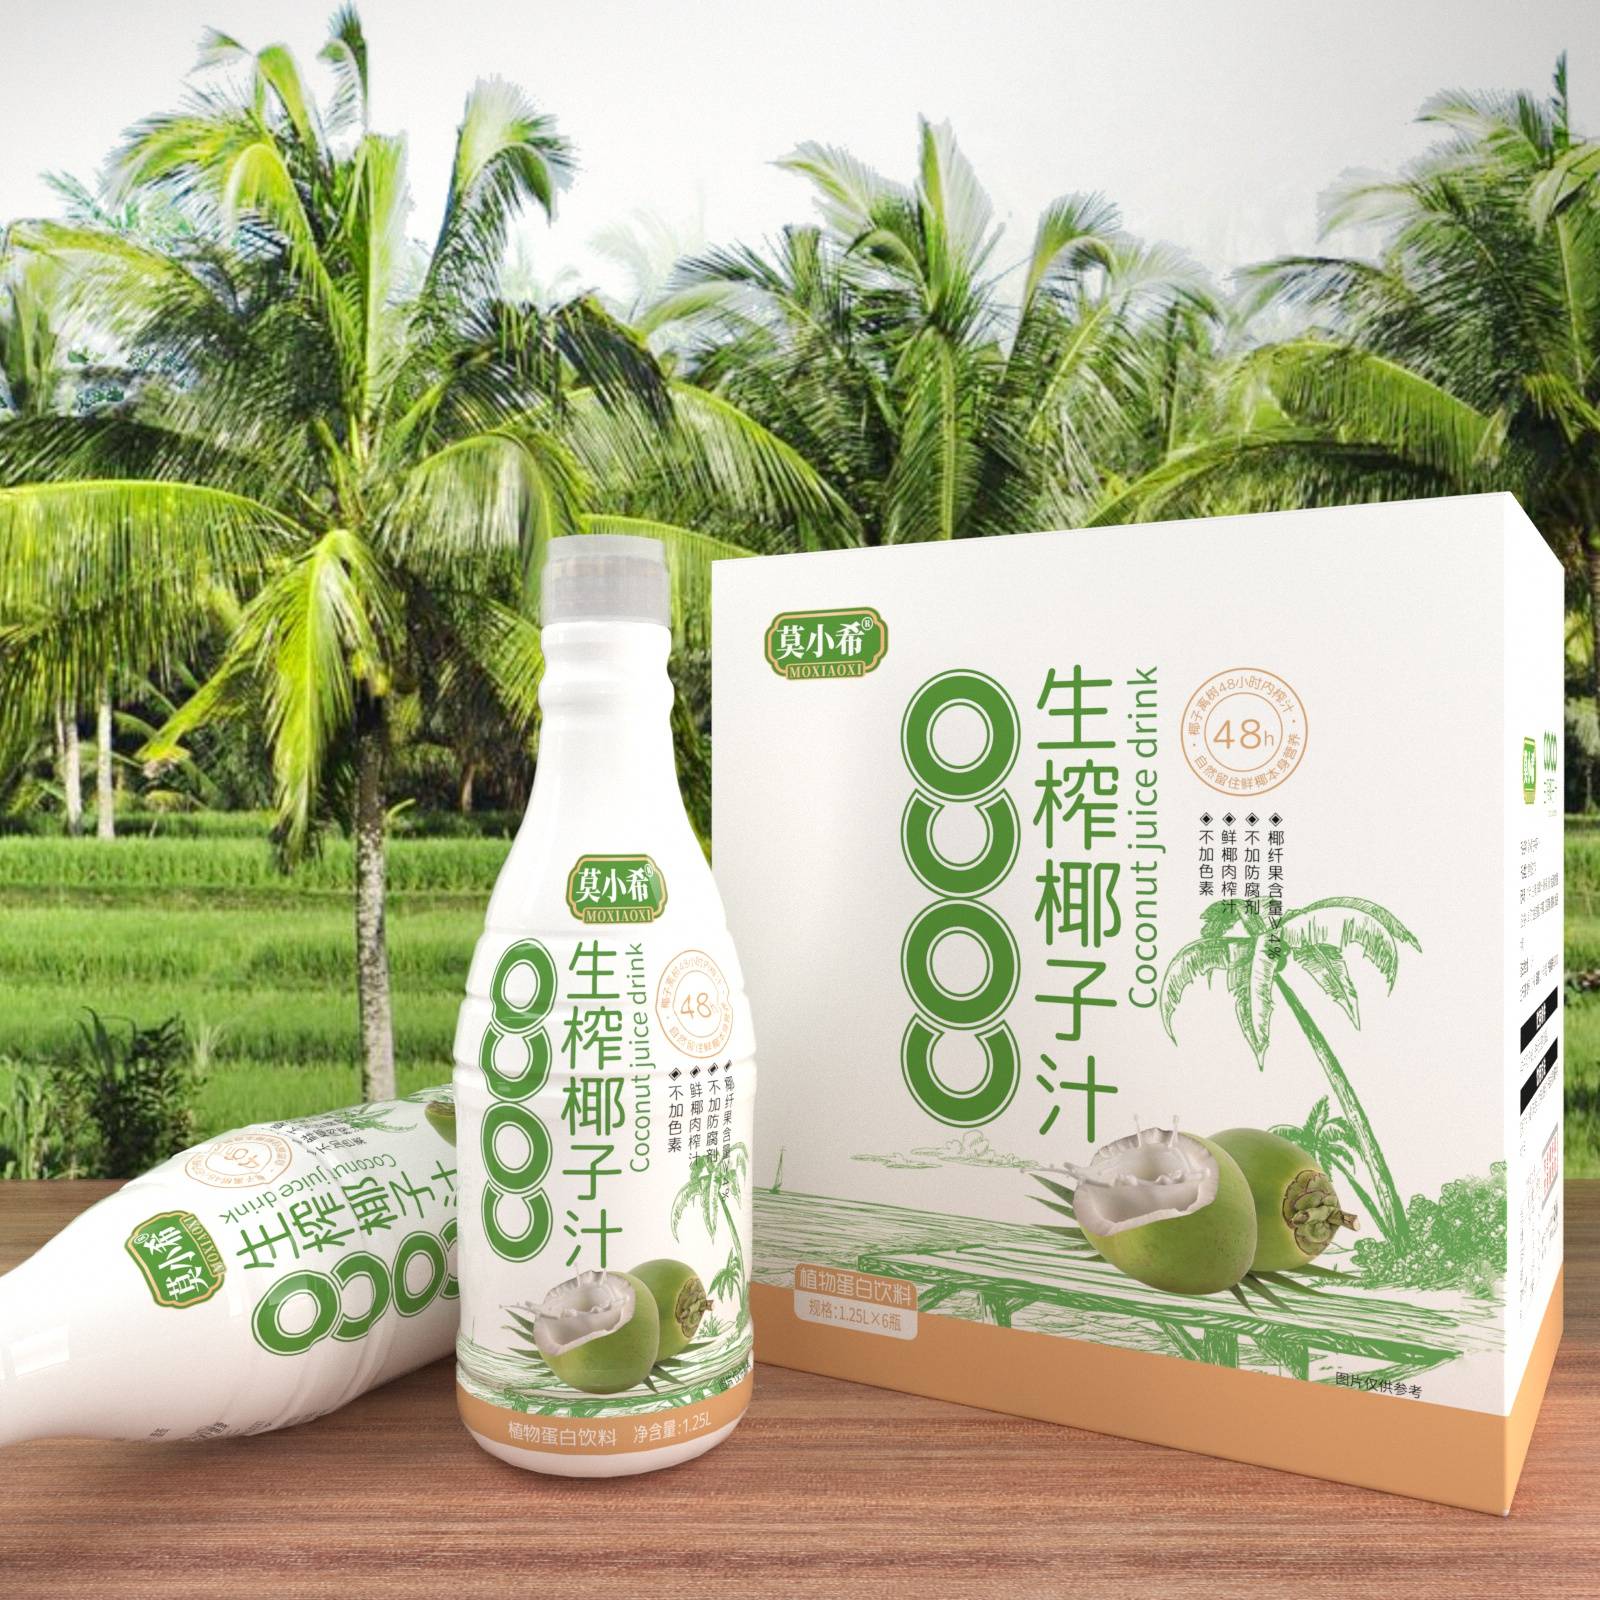 风靡市场,销量不断创新高,莫小希生榨椰子汁消费者们的新选择!